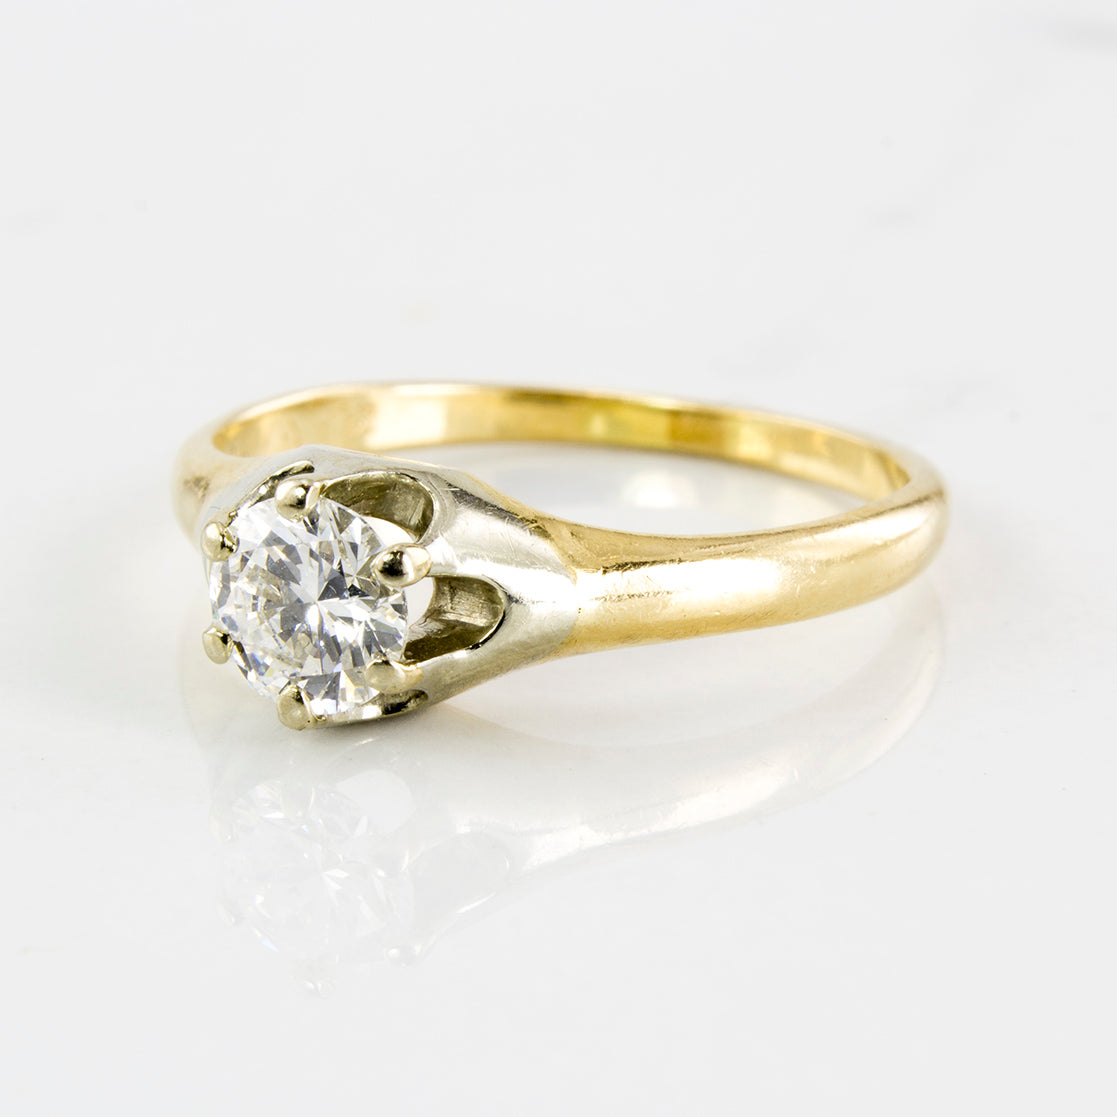 1930's Solitaire Diamond Ring | 0.48 ctw | SZ 6.75 |